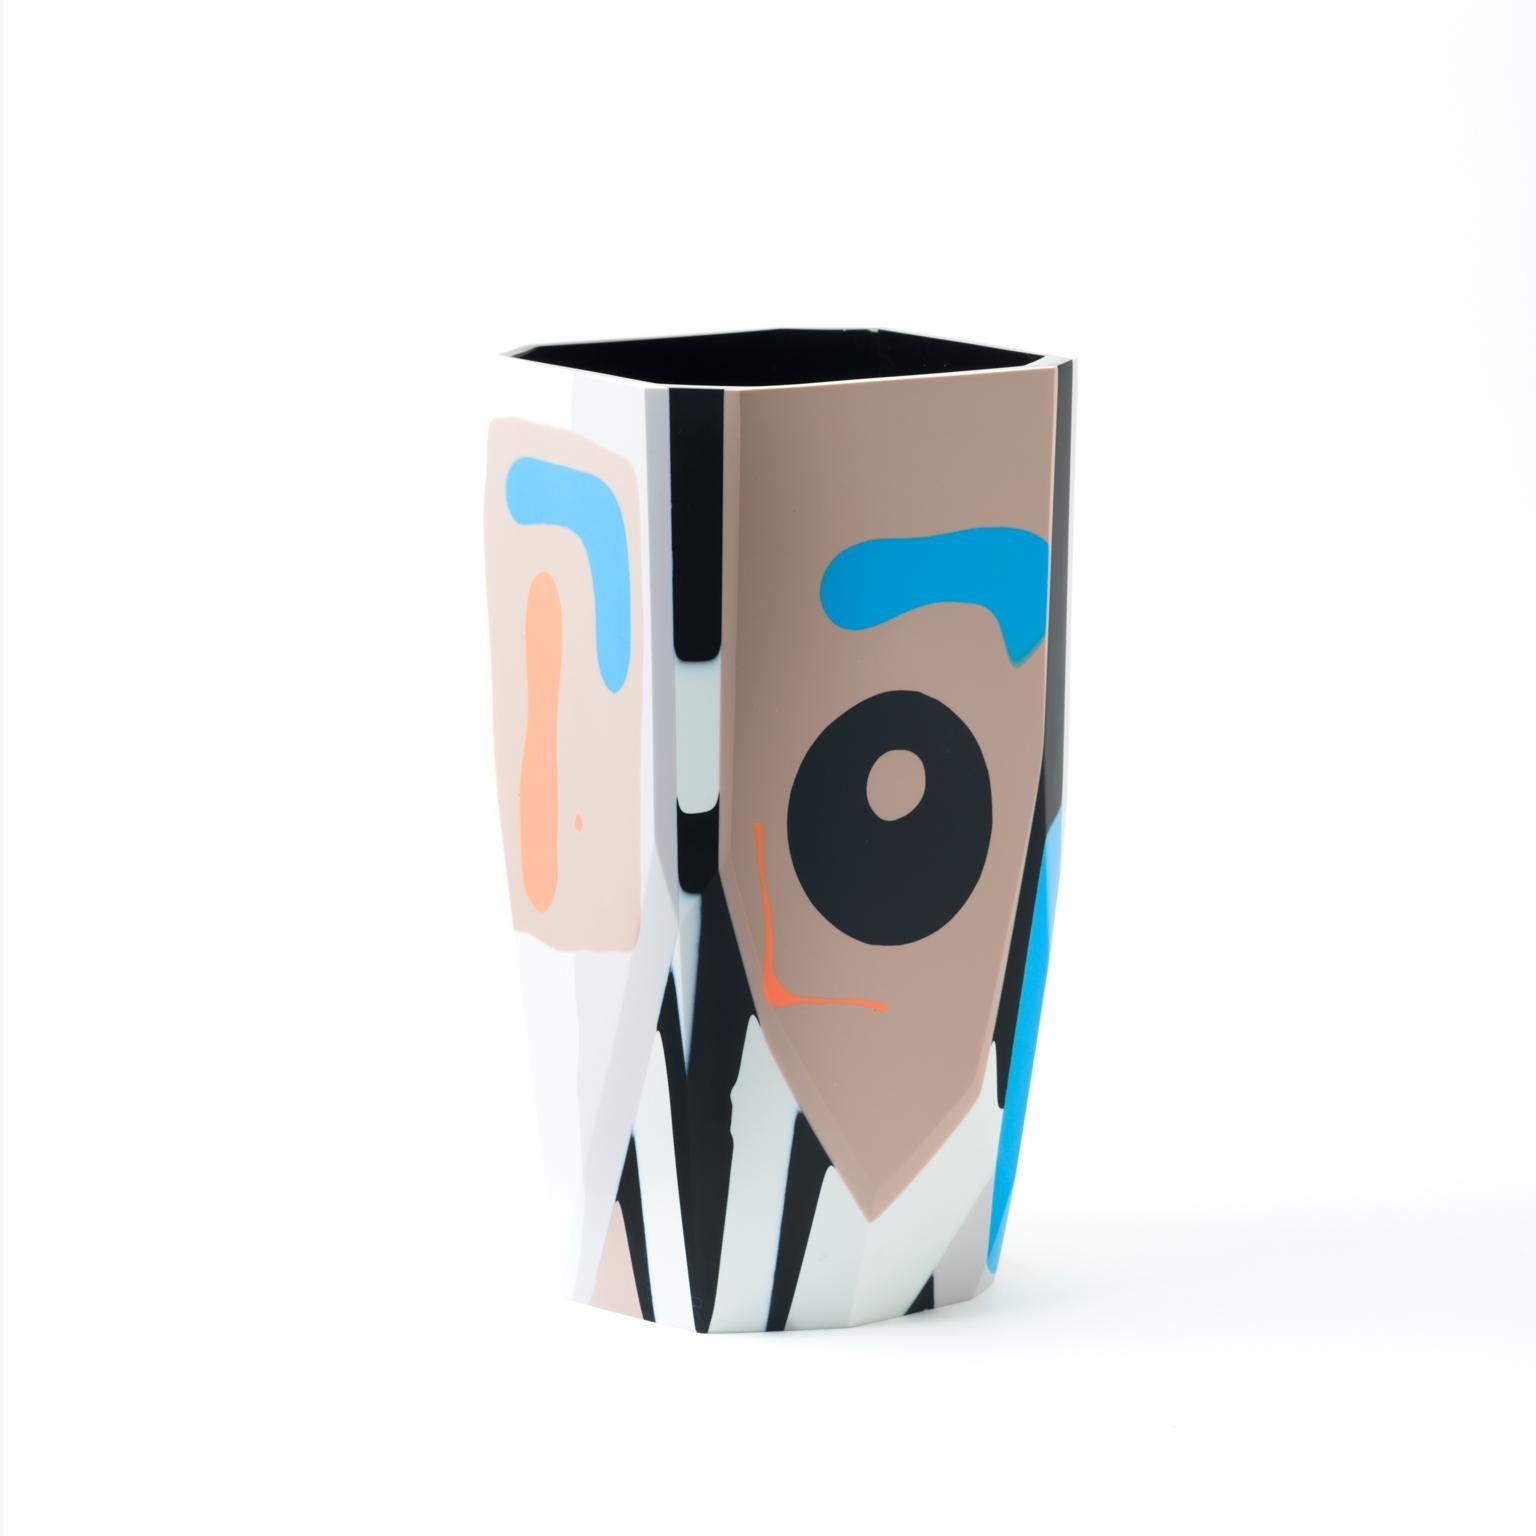 Die grafische und kühne Kalahari-Vase ist eine neue Ergänzung unserer Black-Magic-Kollektion von Harzgefäßen, die von dem Konzept inspiriert ist, das zu enthüllen, was vor den Augen verborgen wurde, aber immer präsent bleibt.

Wir blickten in die